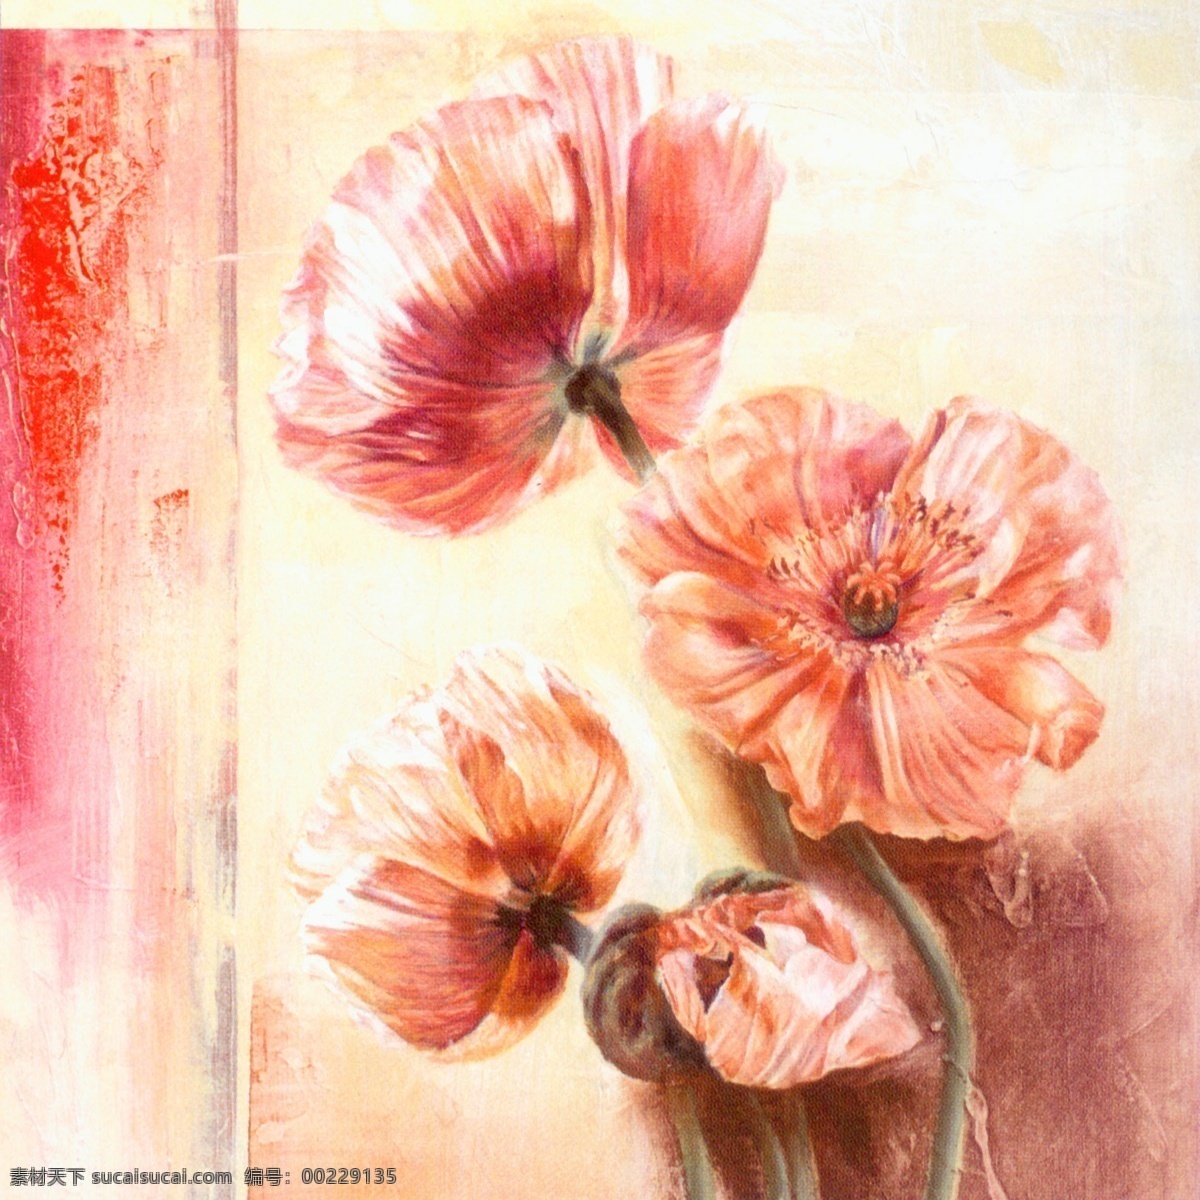 花卉油画 60厘米 x 花 花卉 手绘 油画 装饰画 无框画 扫描 大图 清晰 写真 喷绘 印刷 植物 花朵 抽象 写生 罂粟 特写 绘画书法 文化艺术